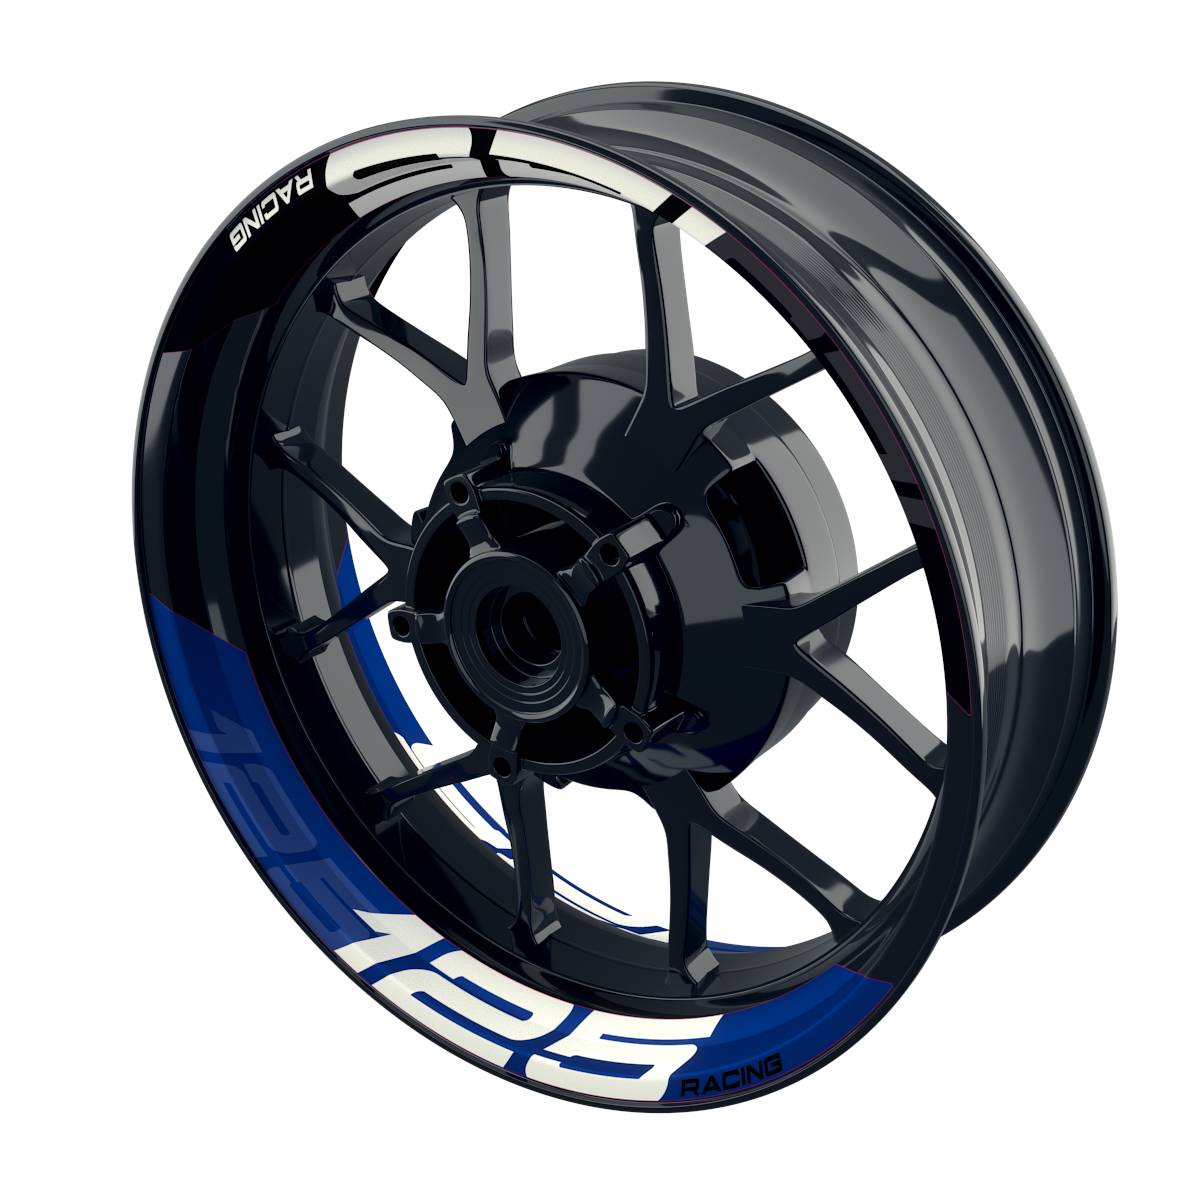 Rim Decals 125 Racing halb halb V2 Wheelsticker Premium splitted